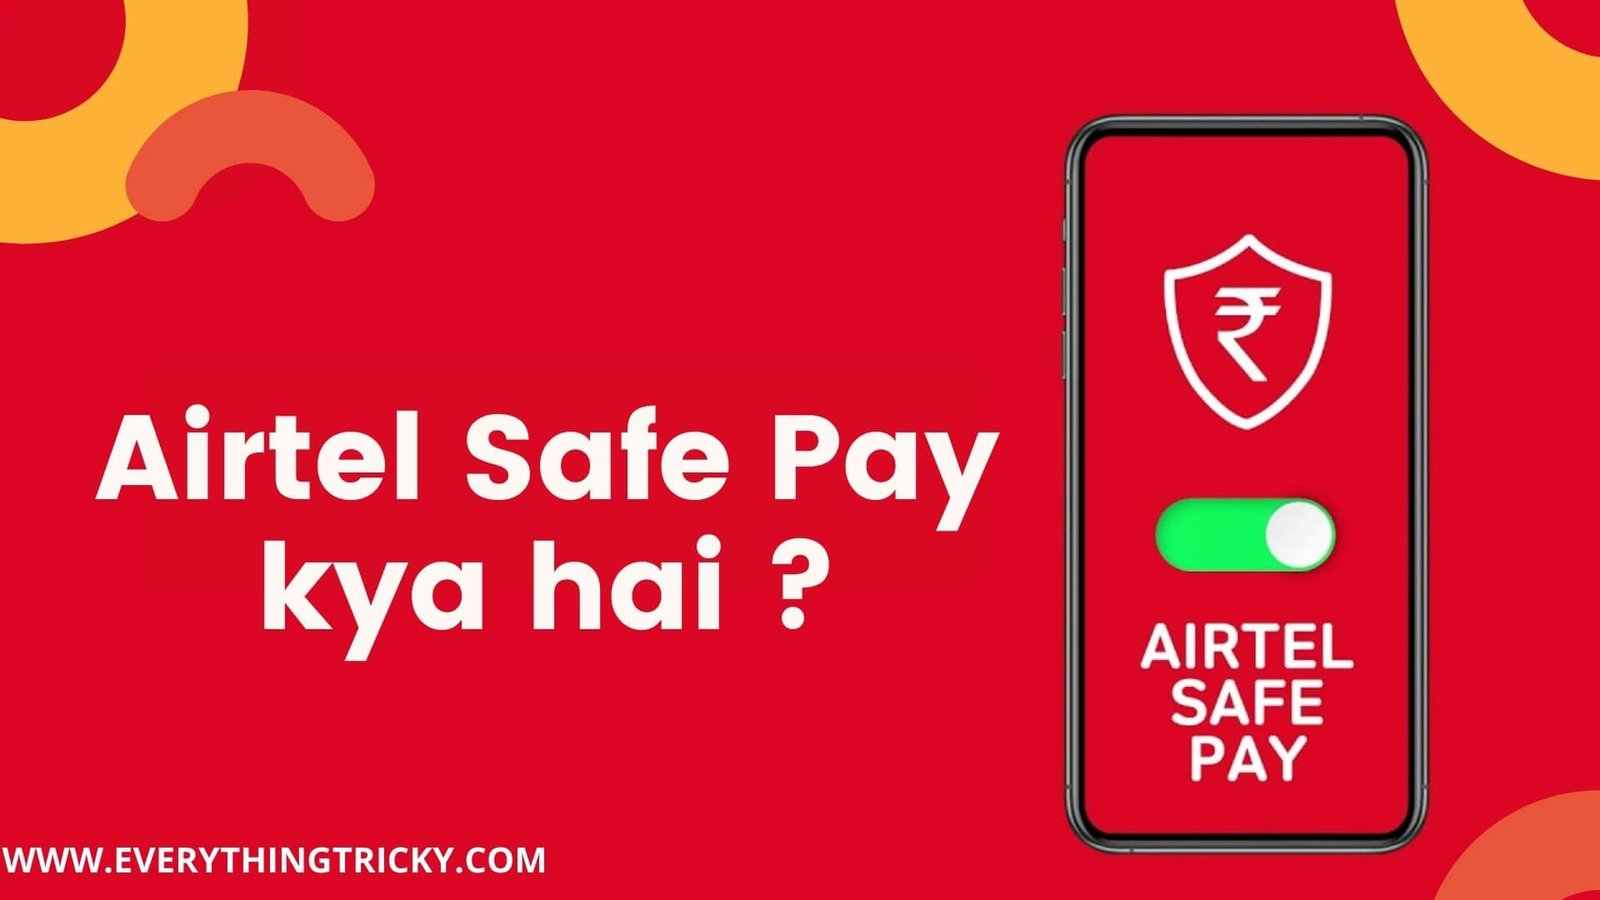 Airtel Safe Pay kya hai